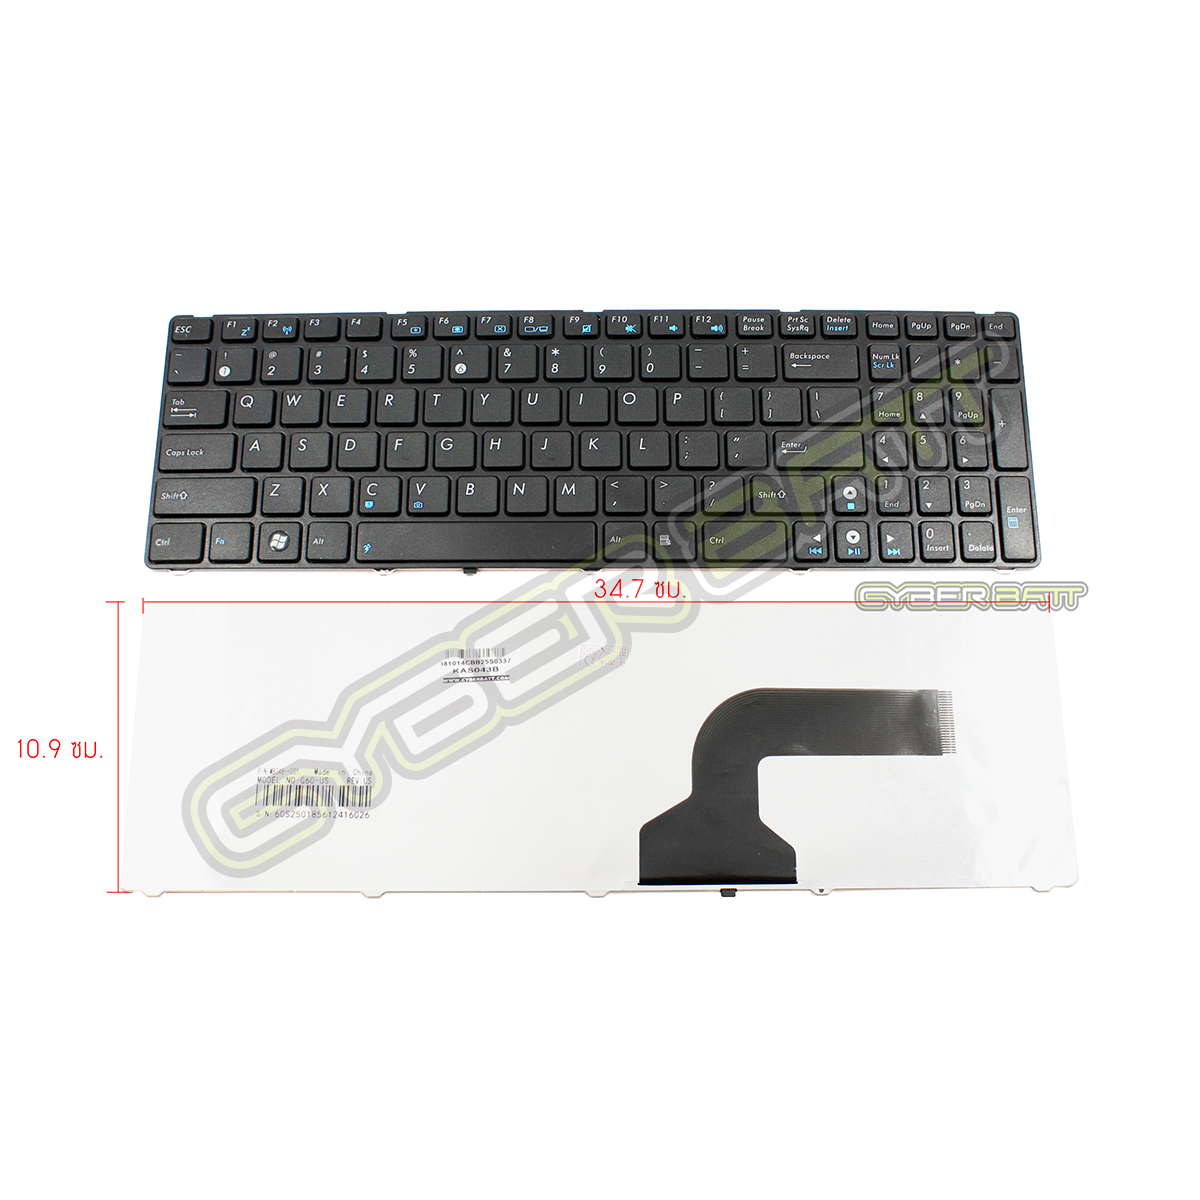 Keyboard Asus G60/K52 Black US 